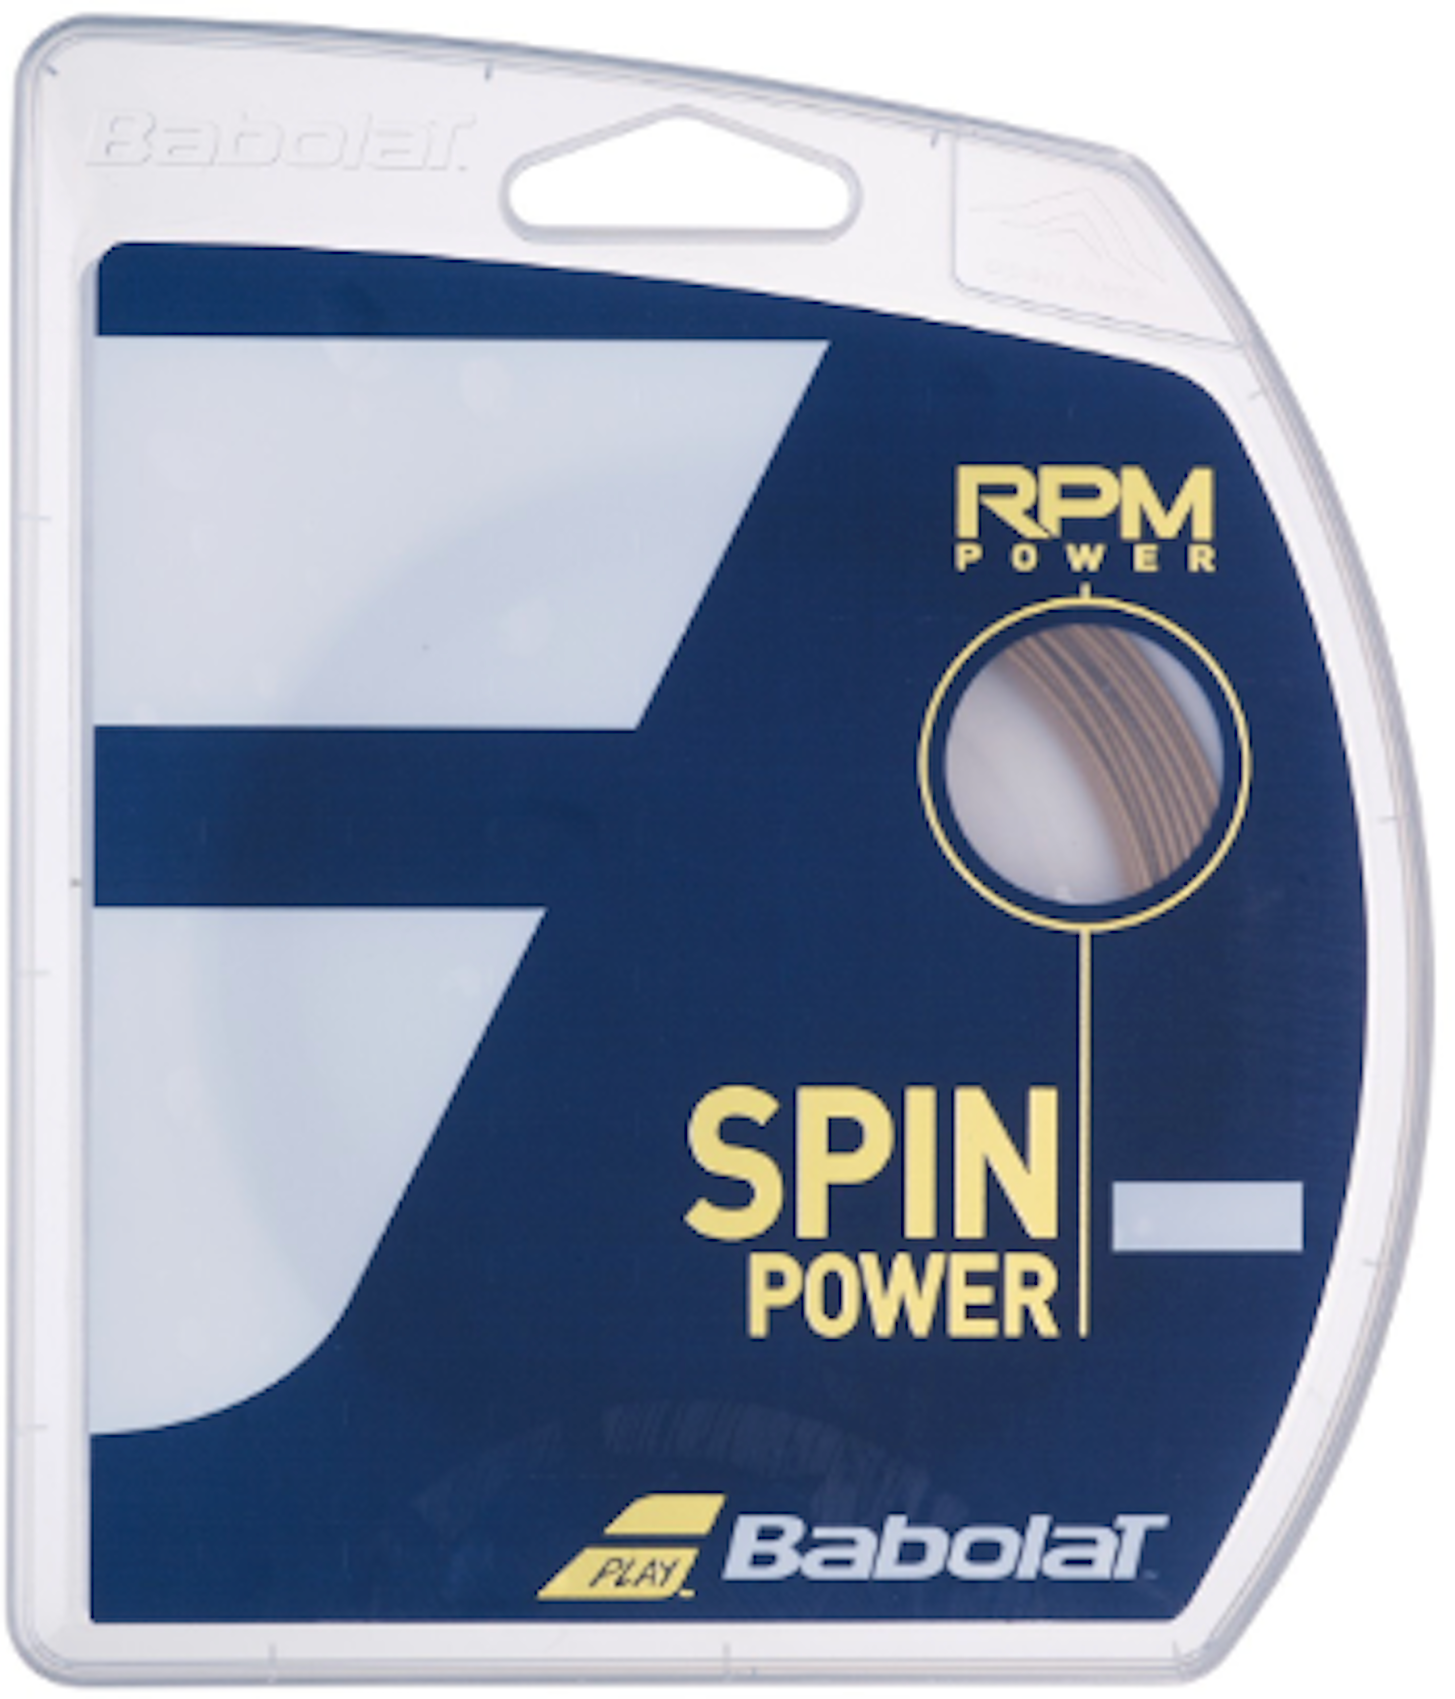 Теннисная струна Babolat RPM Power Spin Power 130 /16 12 метров Коричневый